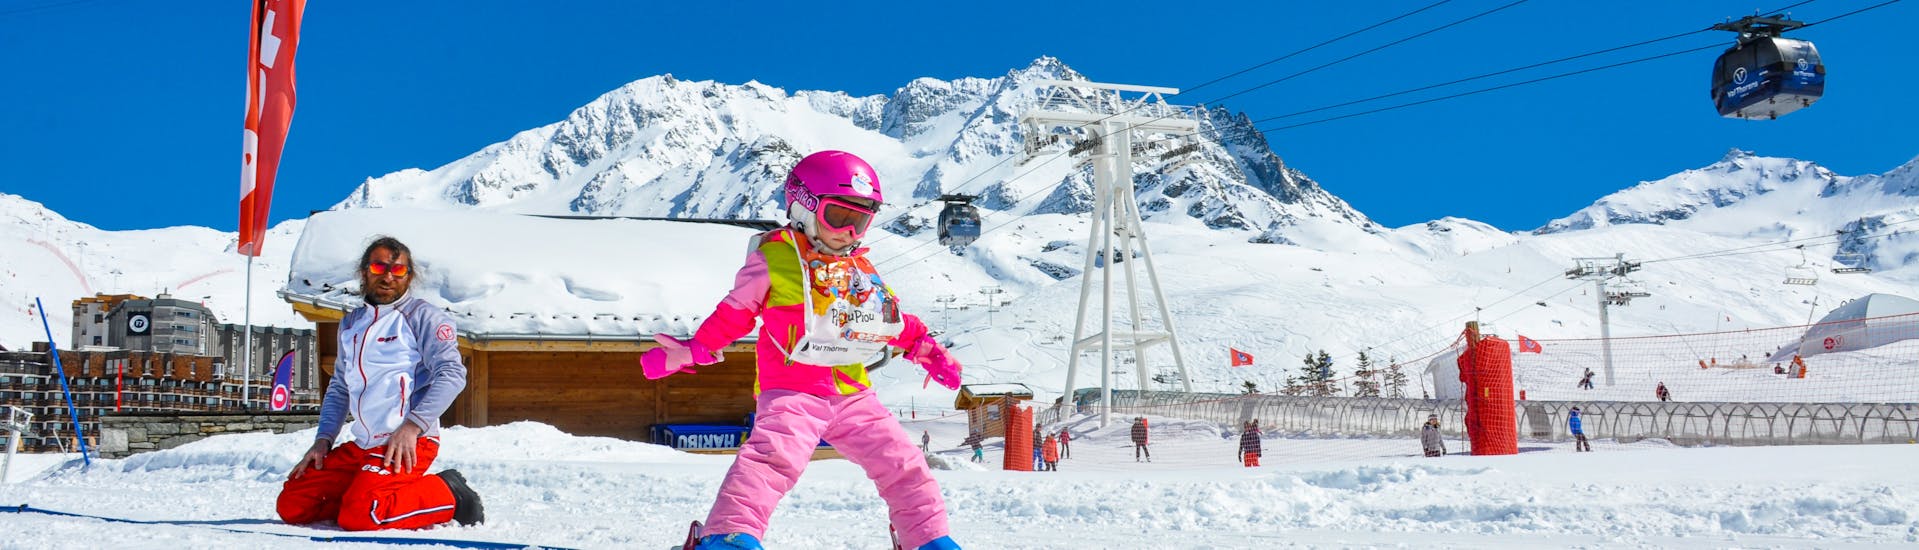 Une petite fille vit ses premières sensations de glisse lors d'un cours de ski pour enfant "piou-piou" avec ESF Val Thorens. 